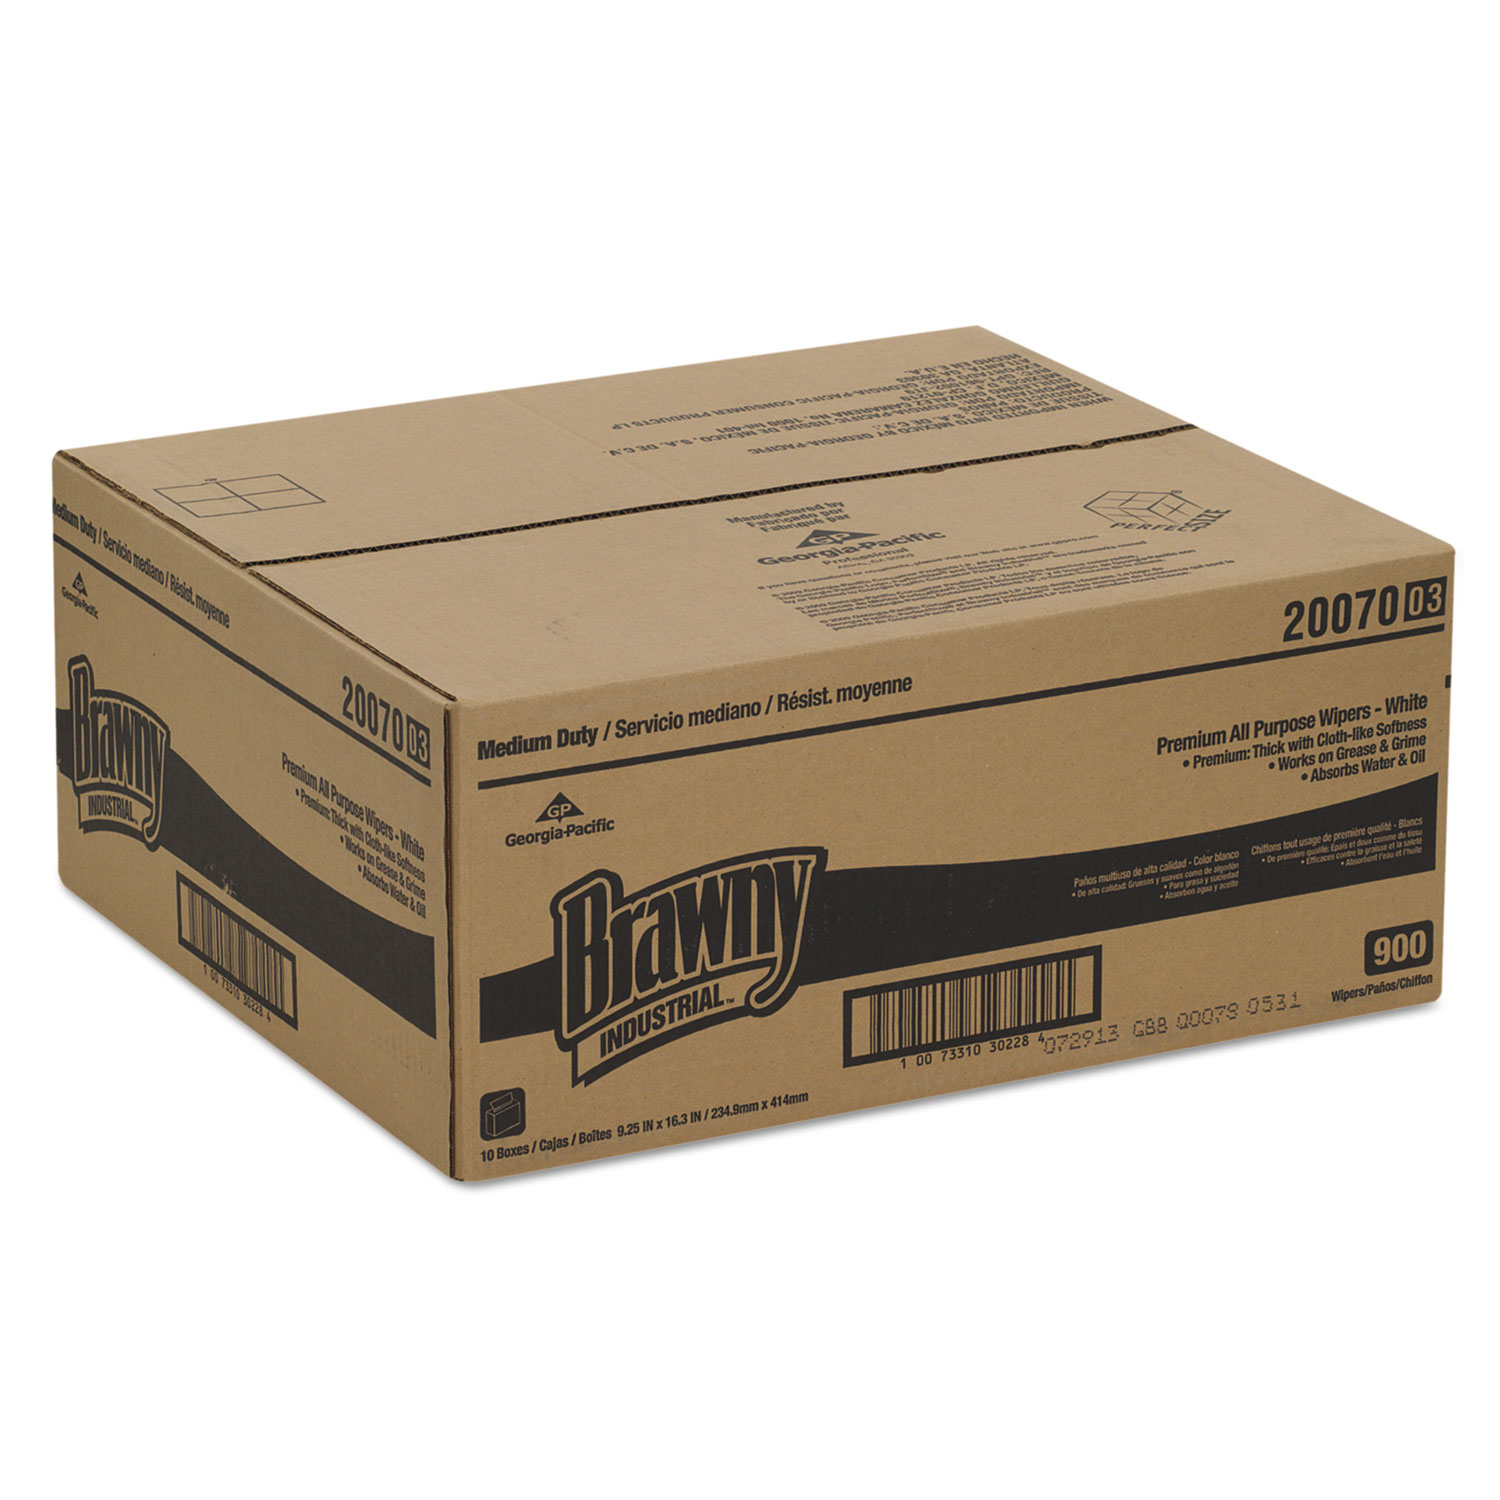 Medium-Duty Premium Wipes, 9 1/4 x 16 3/8, White, 90 Wipes/Box, 10 Boxes/Carton